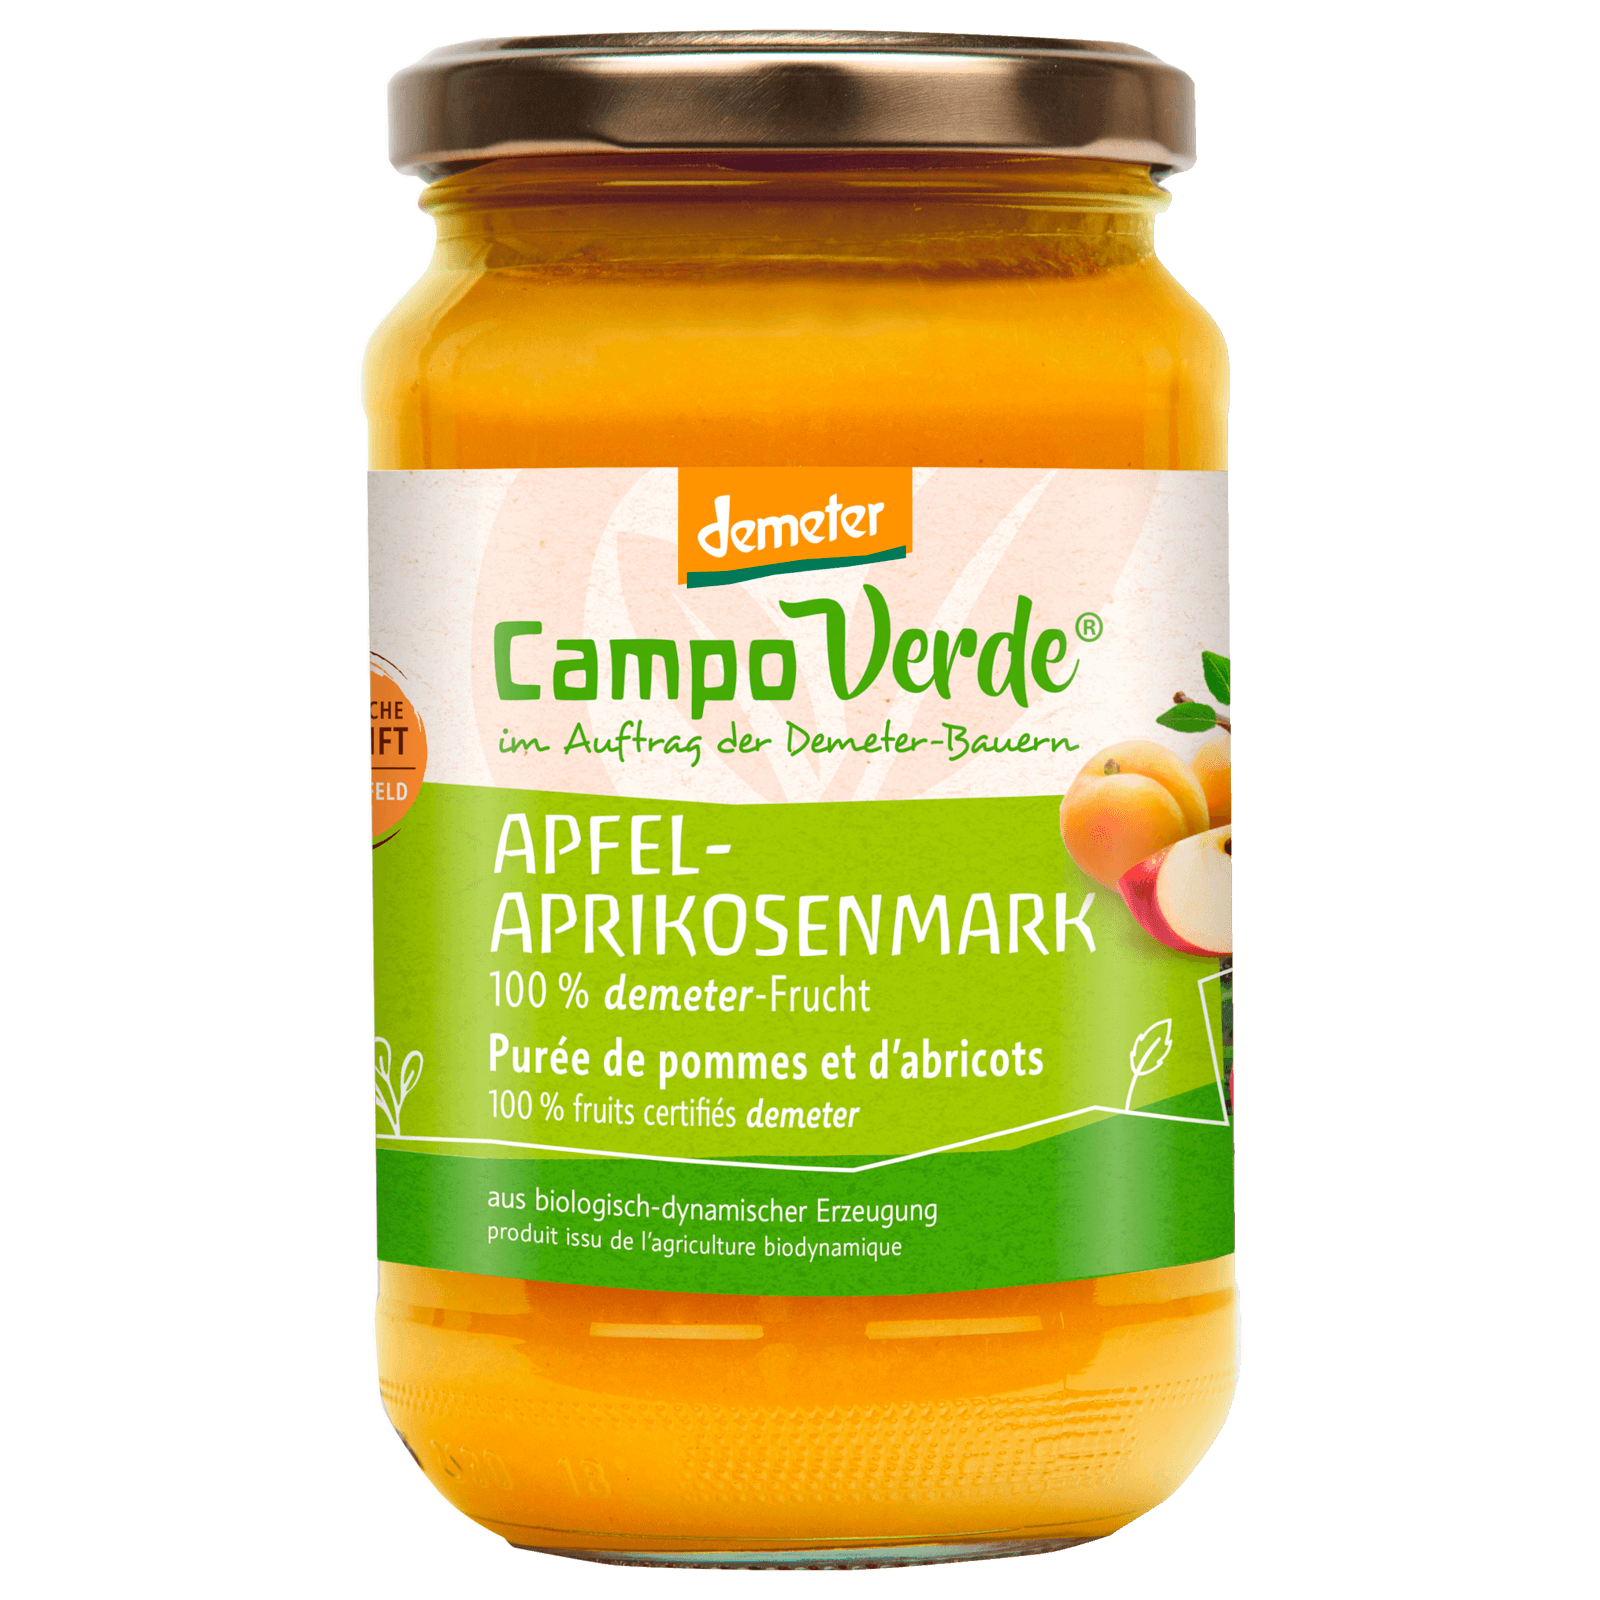 Campo Verde Bio Apfel-Aprikosenmark 360g  für 2.49 EUR